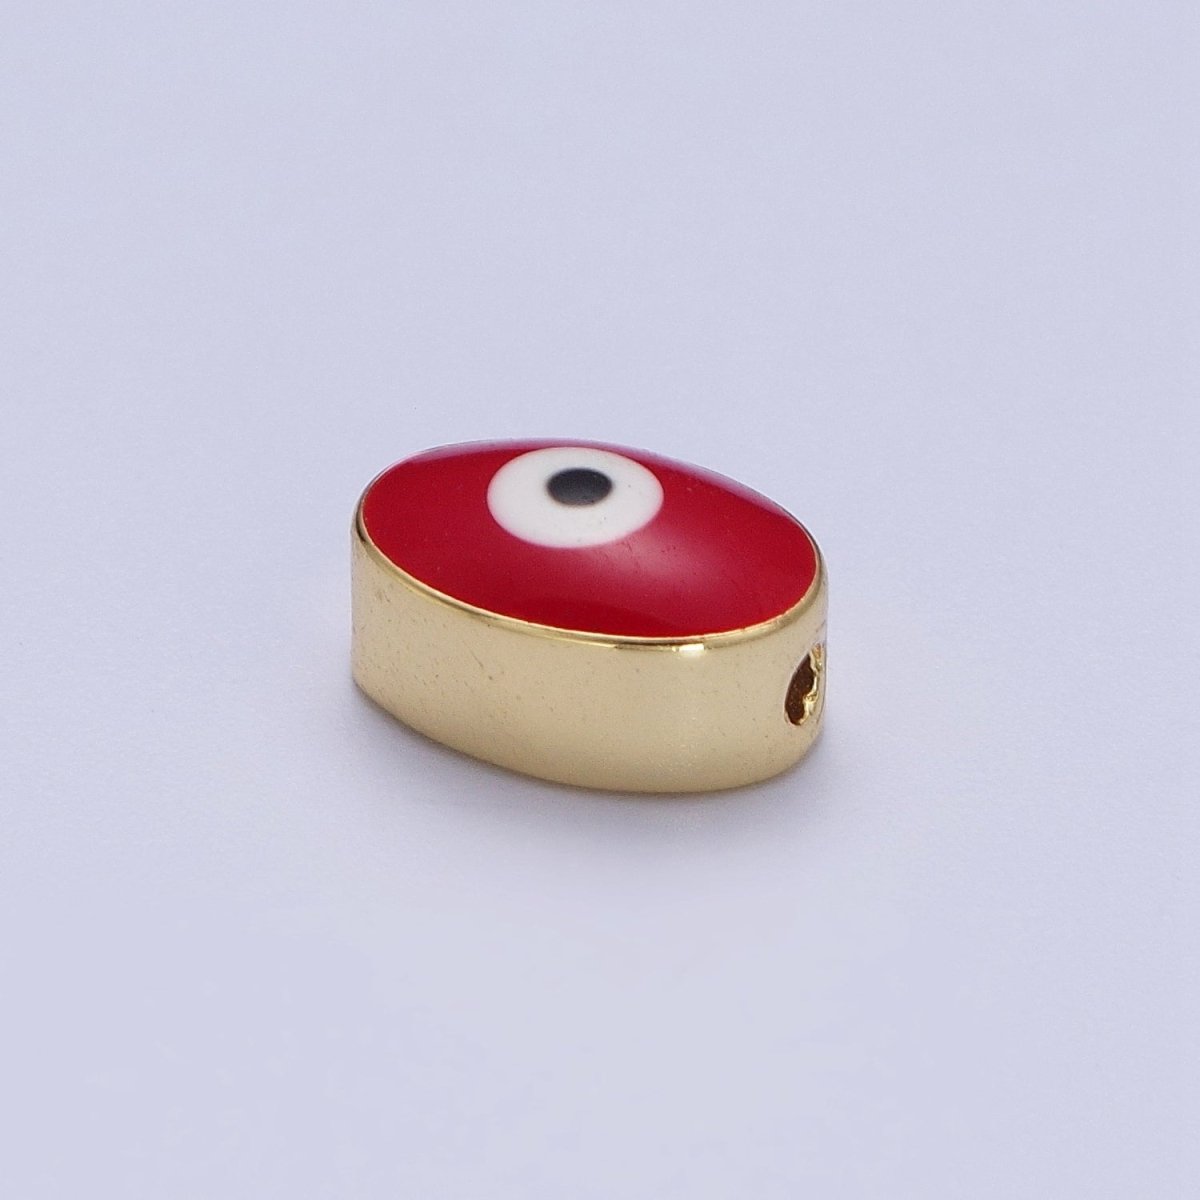 Gold Evil Eye Bead Spacer for Bracelet Red / Purple Eye Bead | B-671 B-652 - DLUXCA